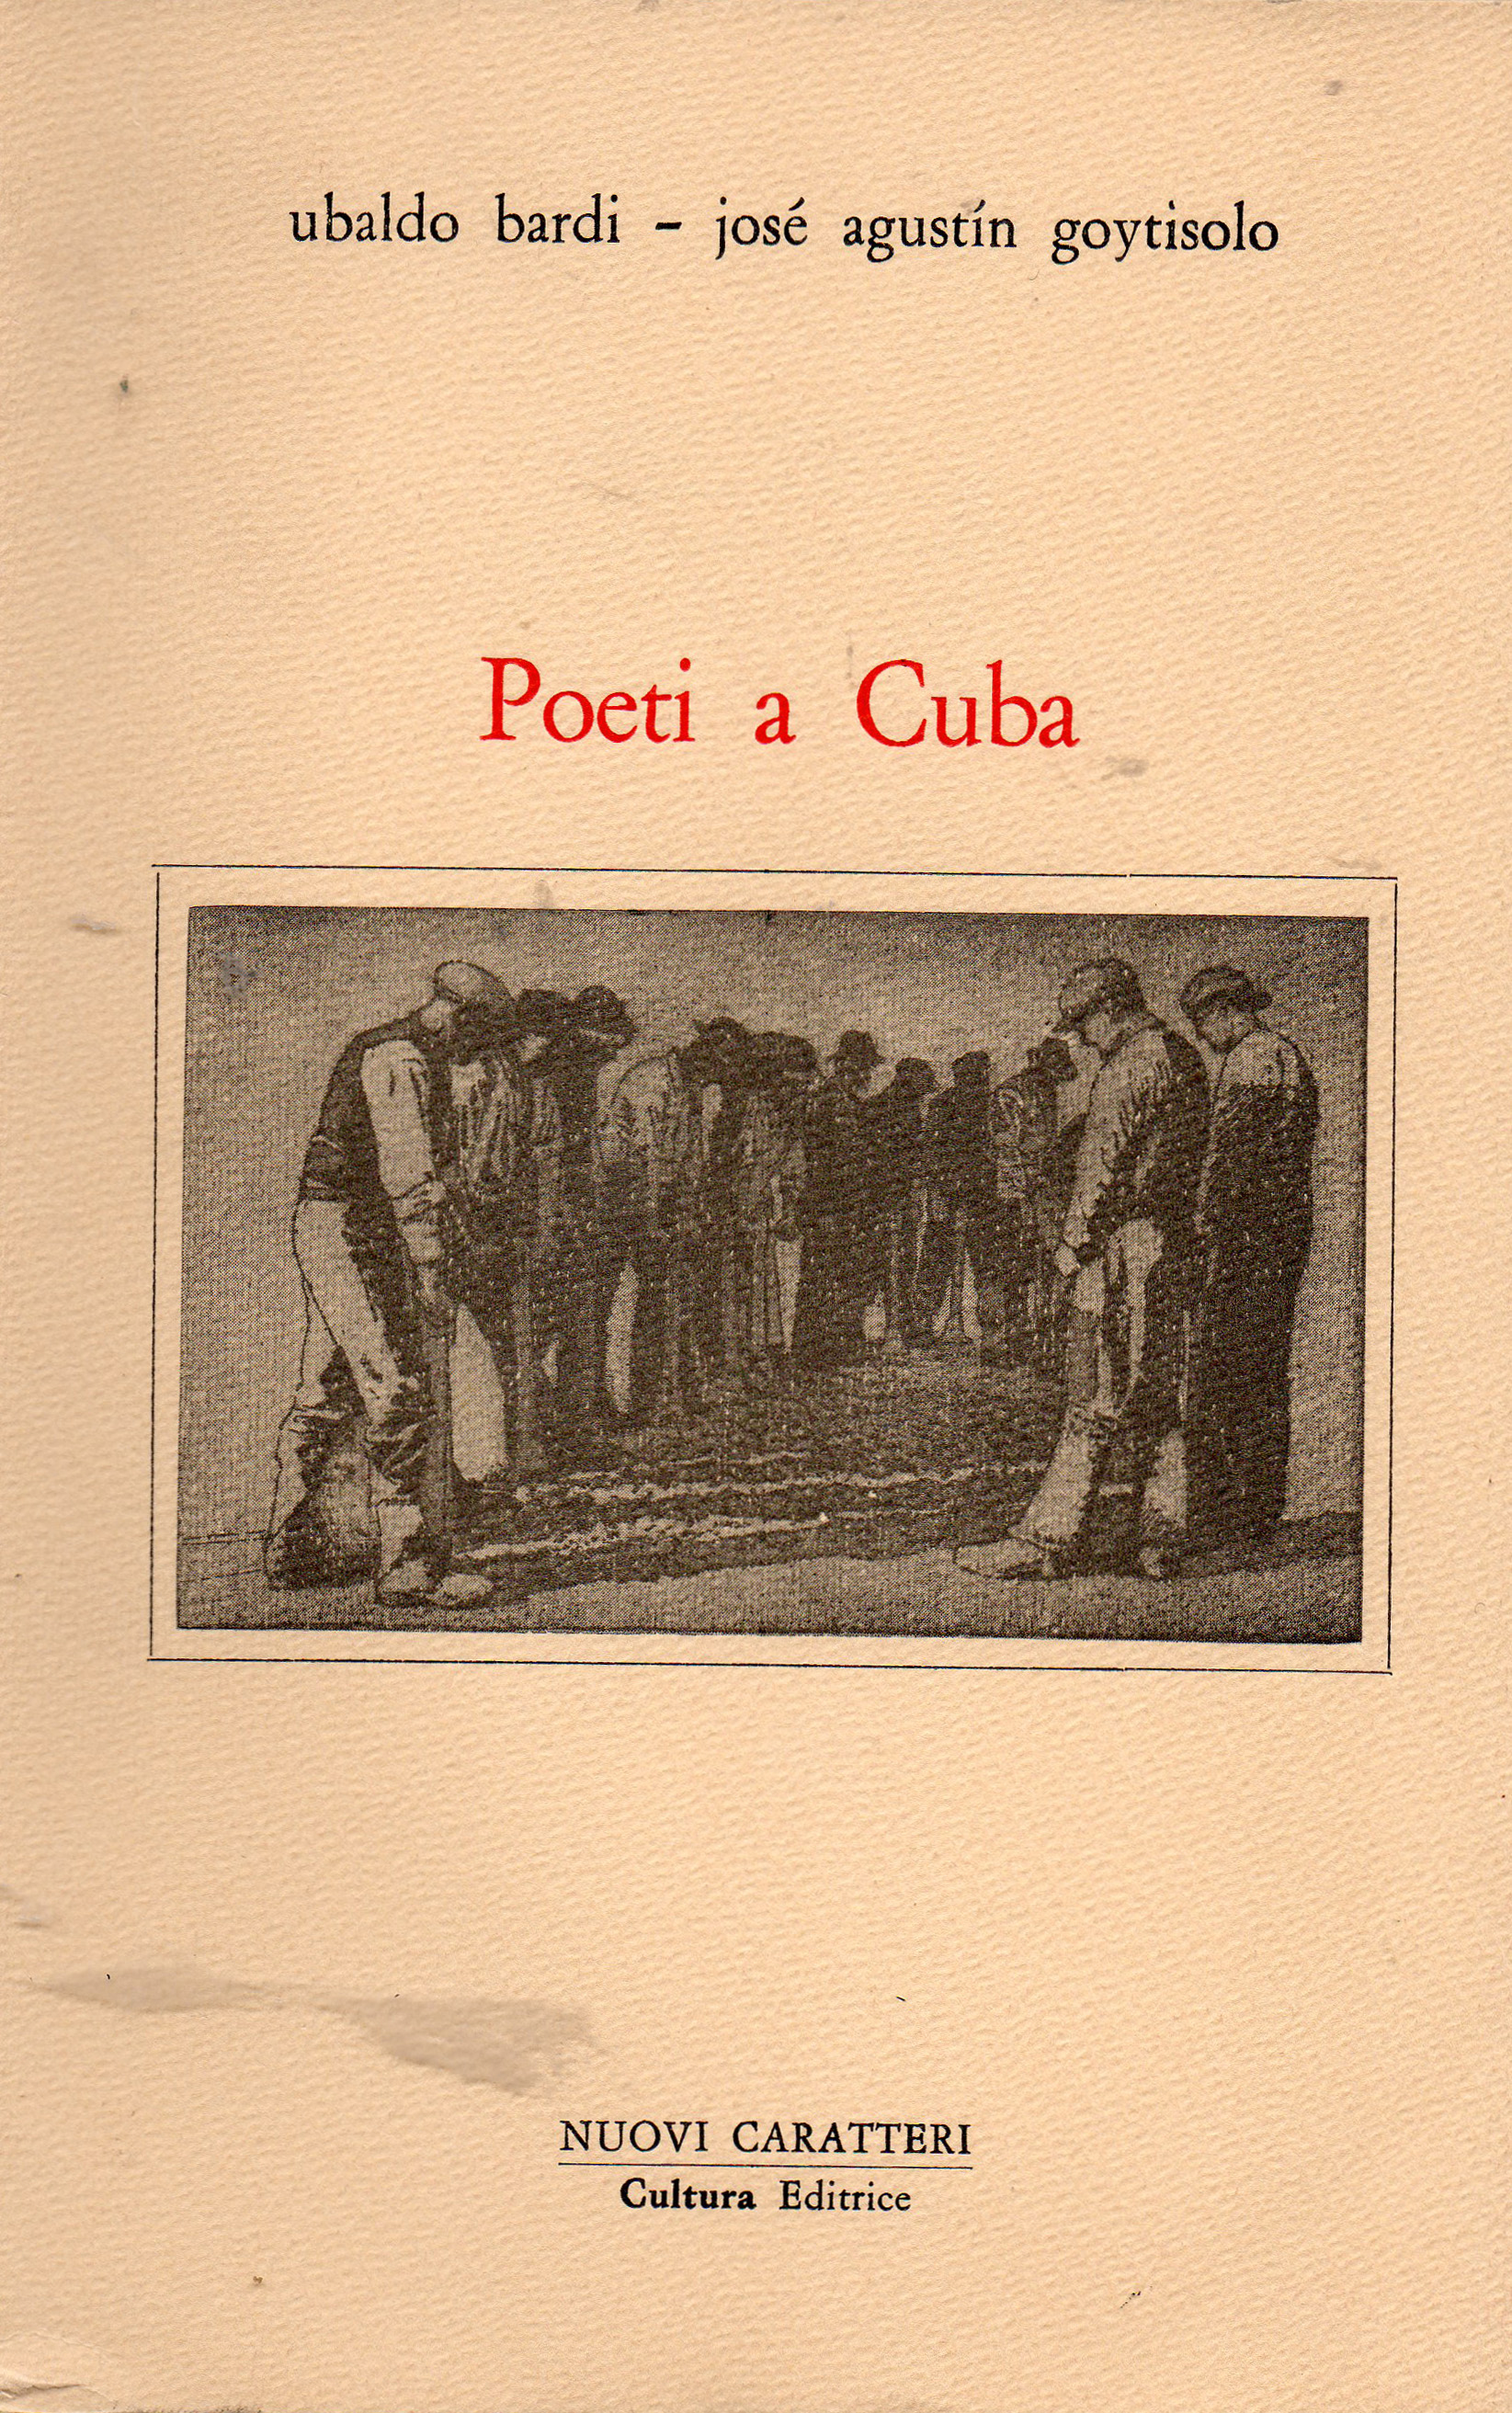 Poeti cubani